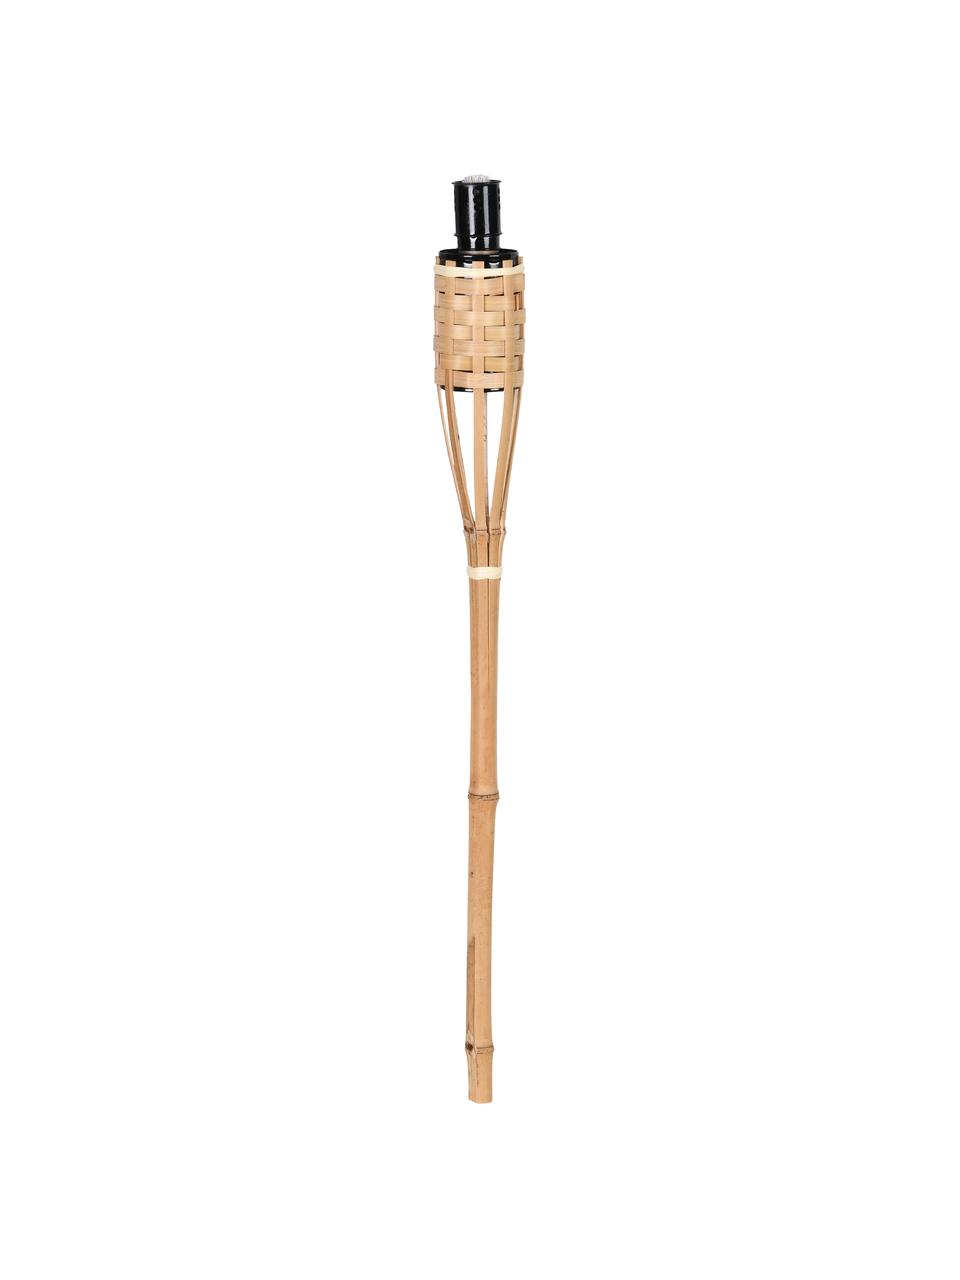 Fackeln Bambus, 3 Stück, Gestell: Bambus, Gefäß: Metall, lackiert, Beige, Ø 6 x H 63 cm